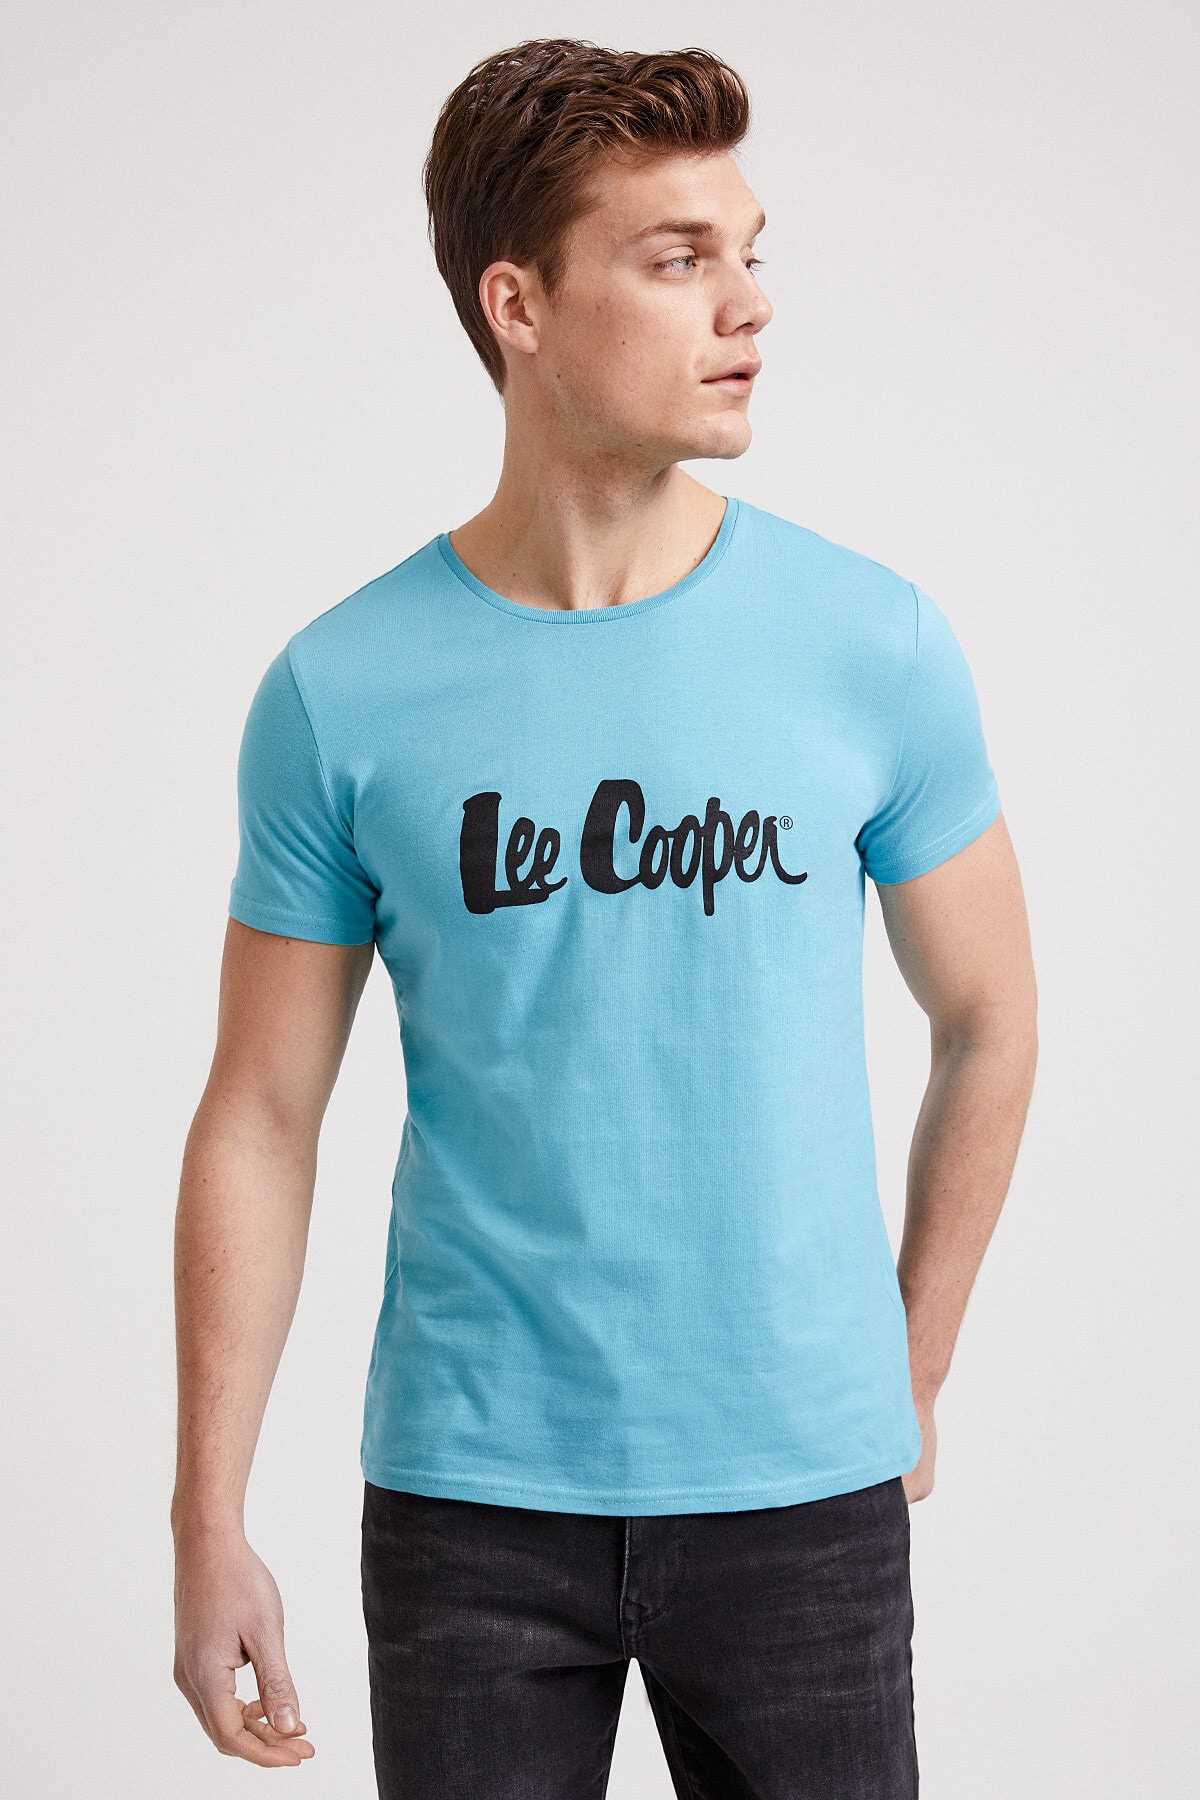 خرید اینترنتی تی شرت خاص شیک Lee Cooper رنگ فیروزه ای ty40634006